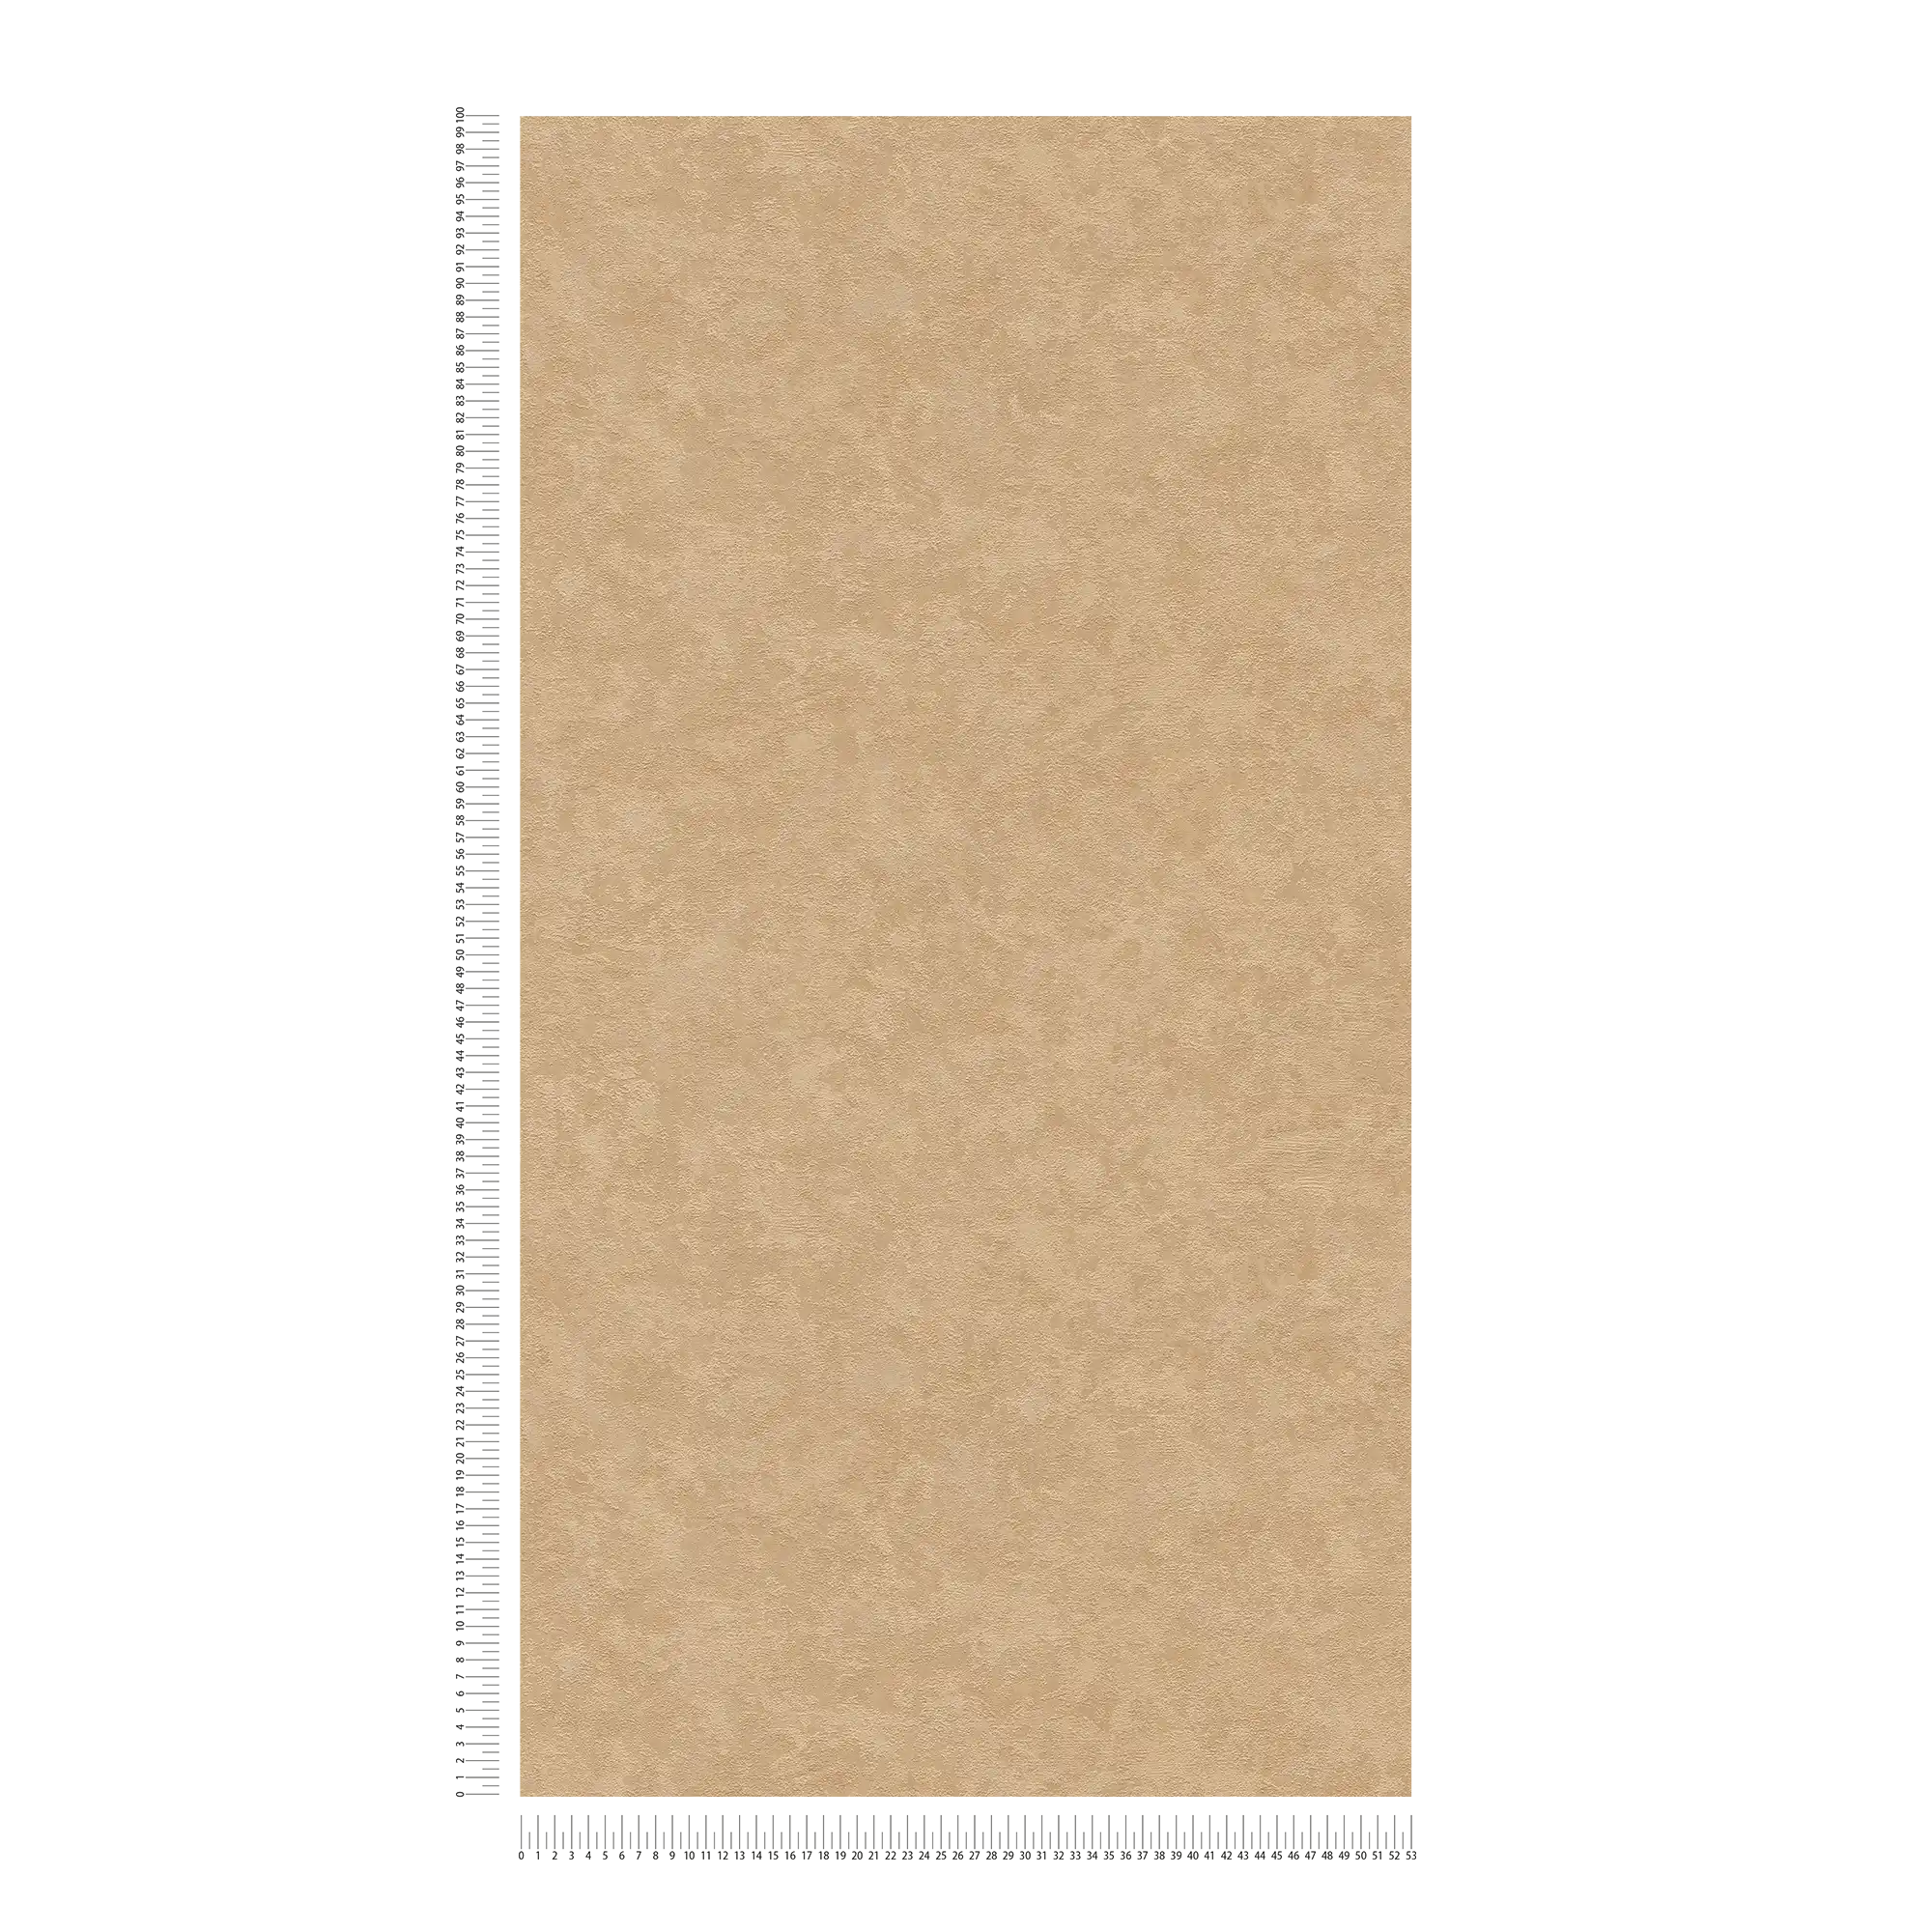             Papel pintado unitario con textura moteada - beige, marrón
        